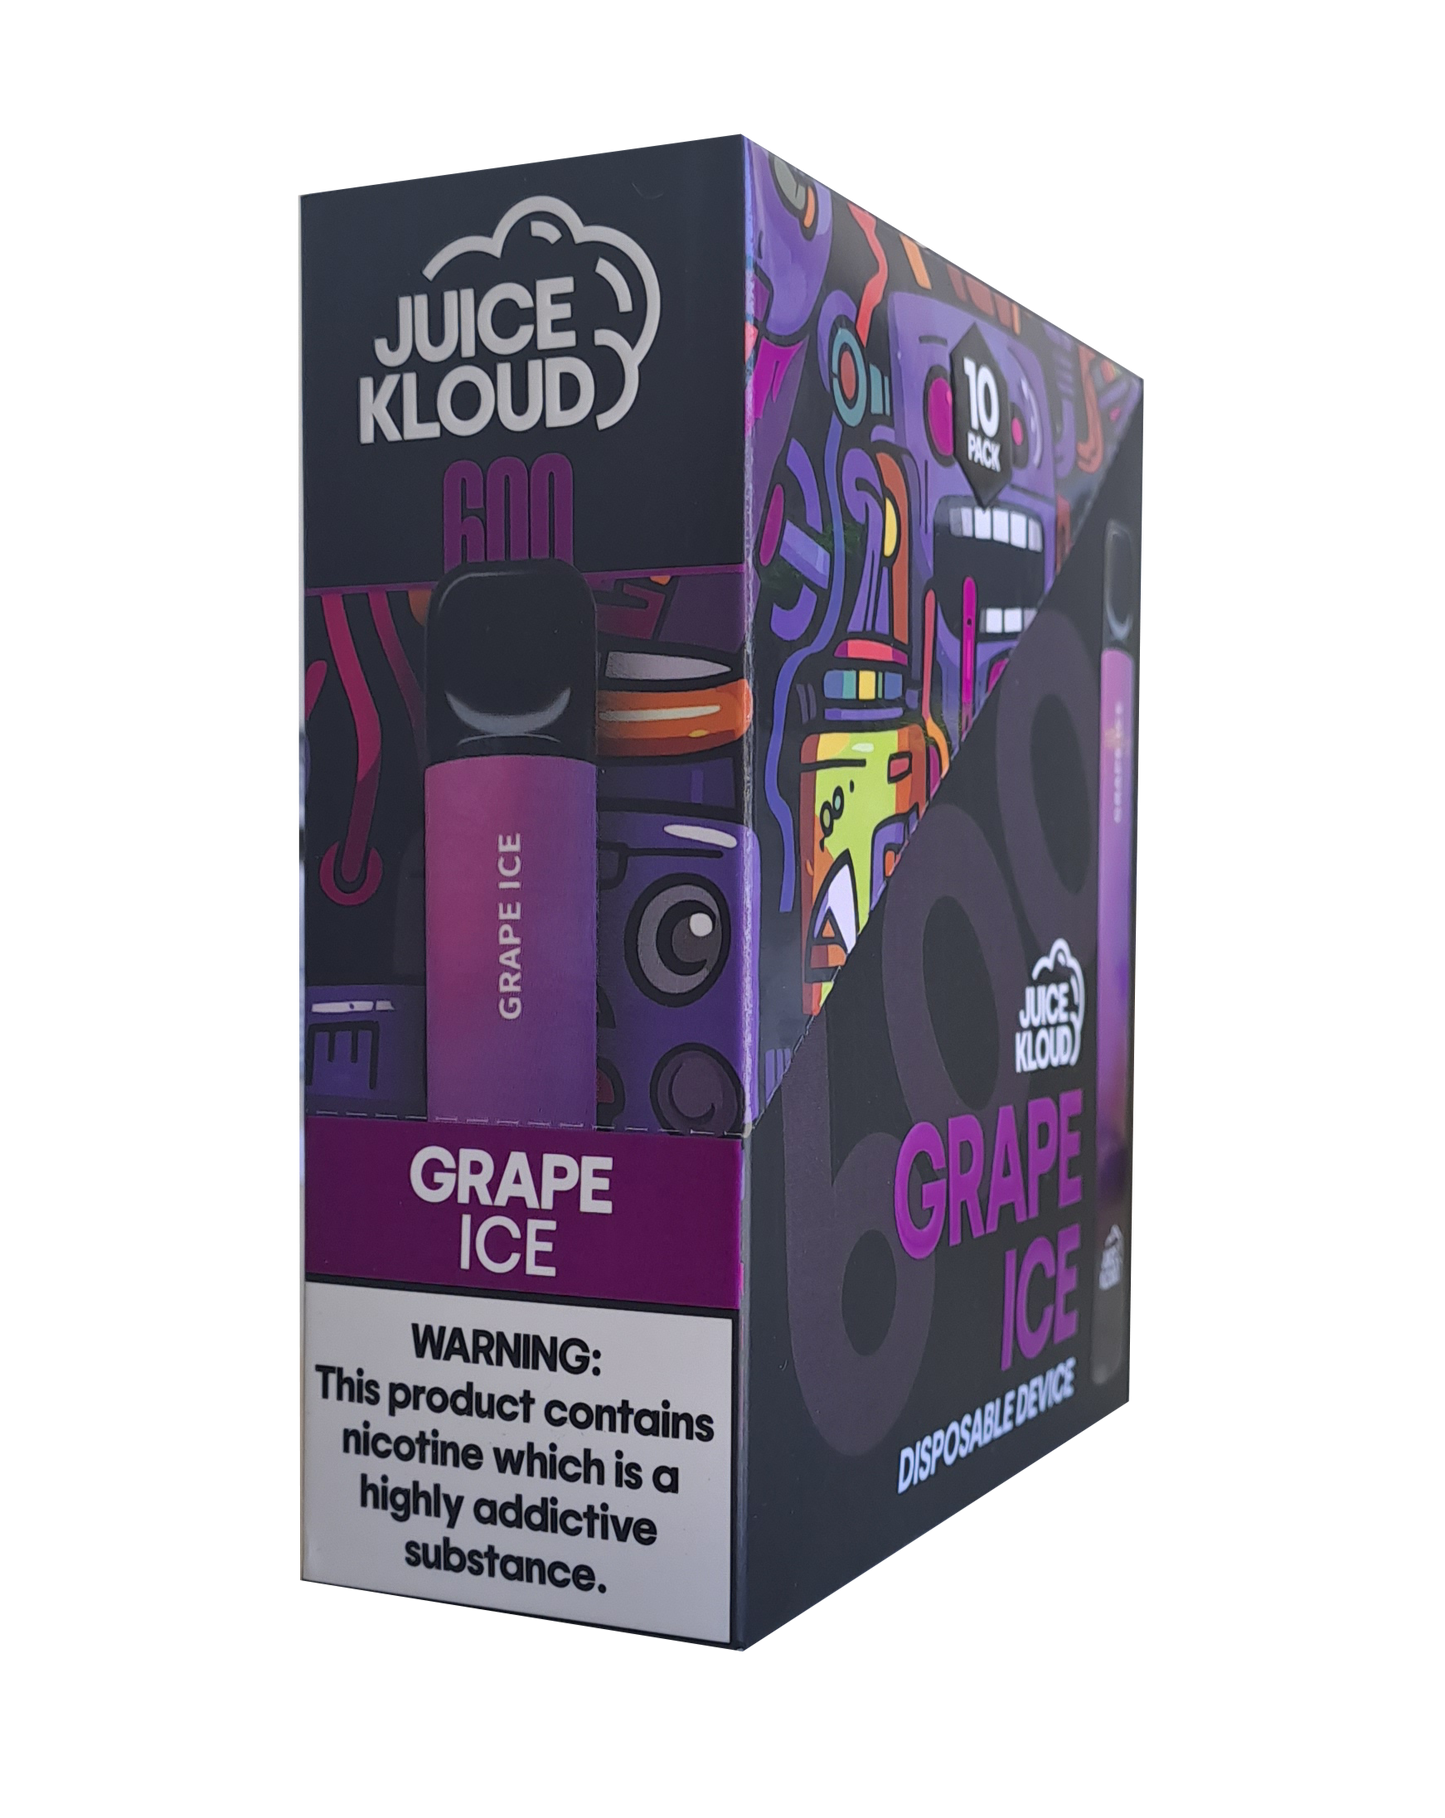 JUICE KLOUD 2ML - GRAPE ICE: 10 PACK